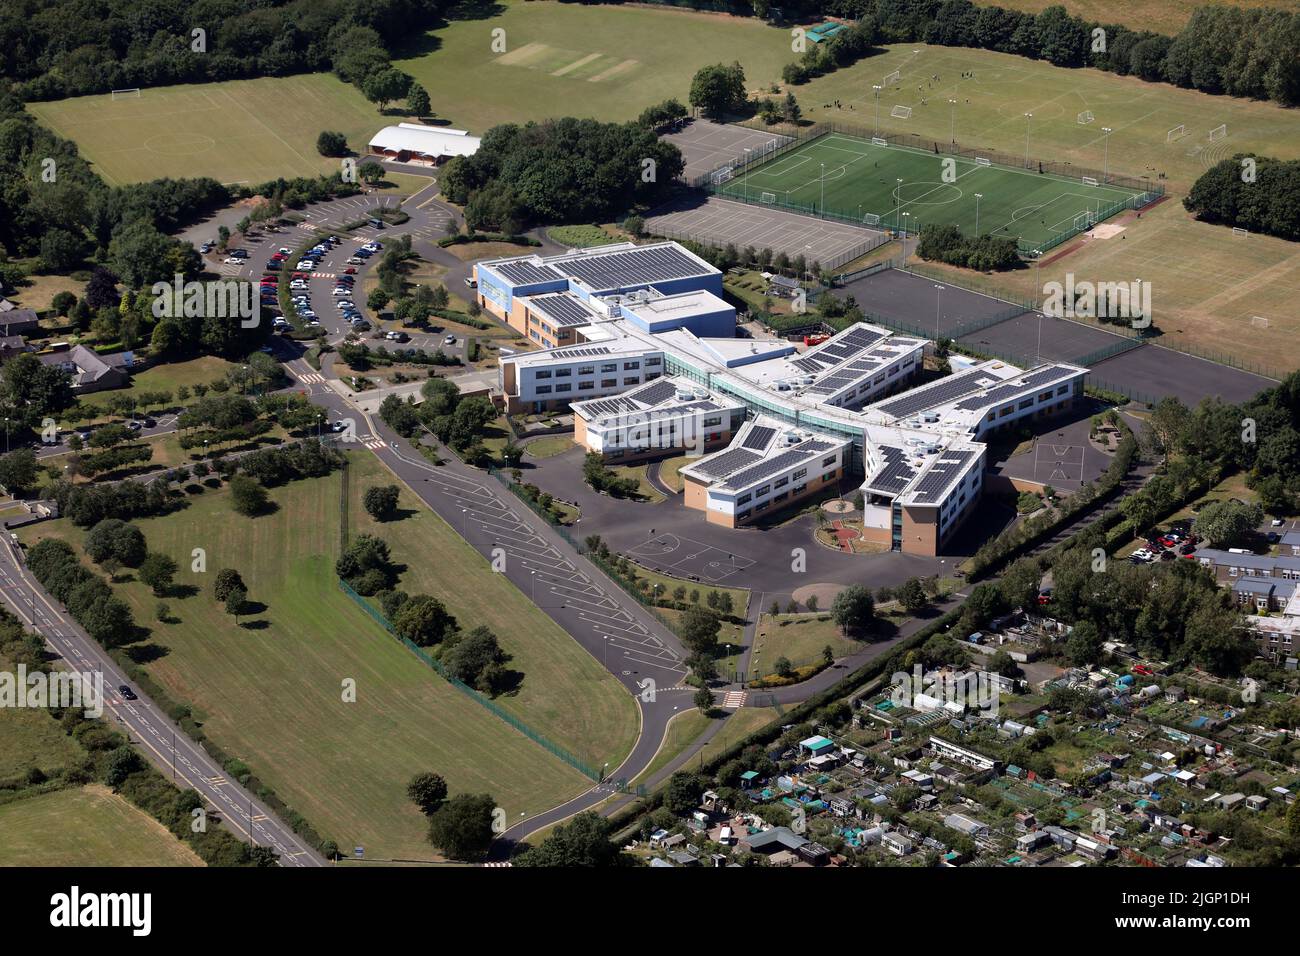 Vista aérea de la escuela secundaria Walbottle Academy nr Newcastle upon Tyne, Tyne & Wear. Benwell & Walbottle Cricket Club se puede ver en el fondo. Foto de stock